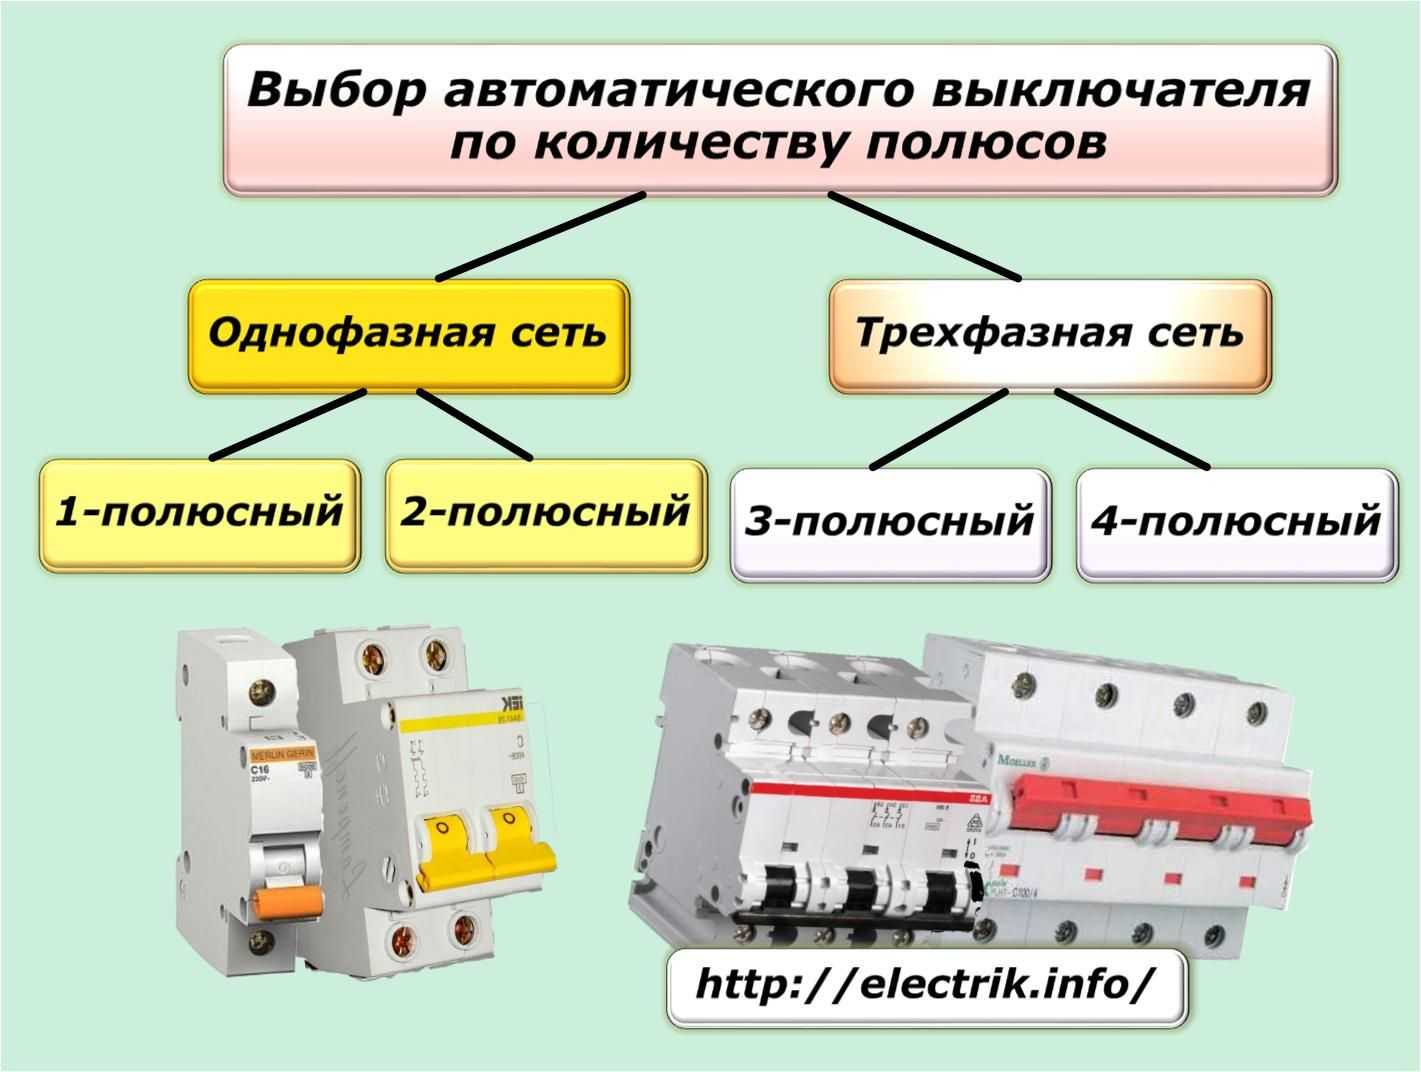 Категории автоматических выключателей — a, b, c и d